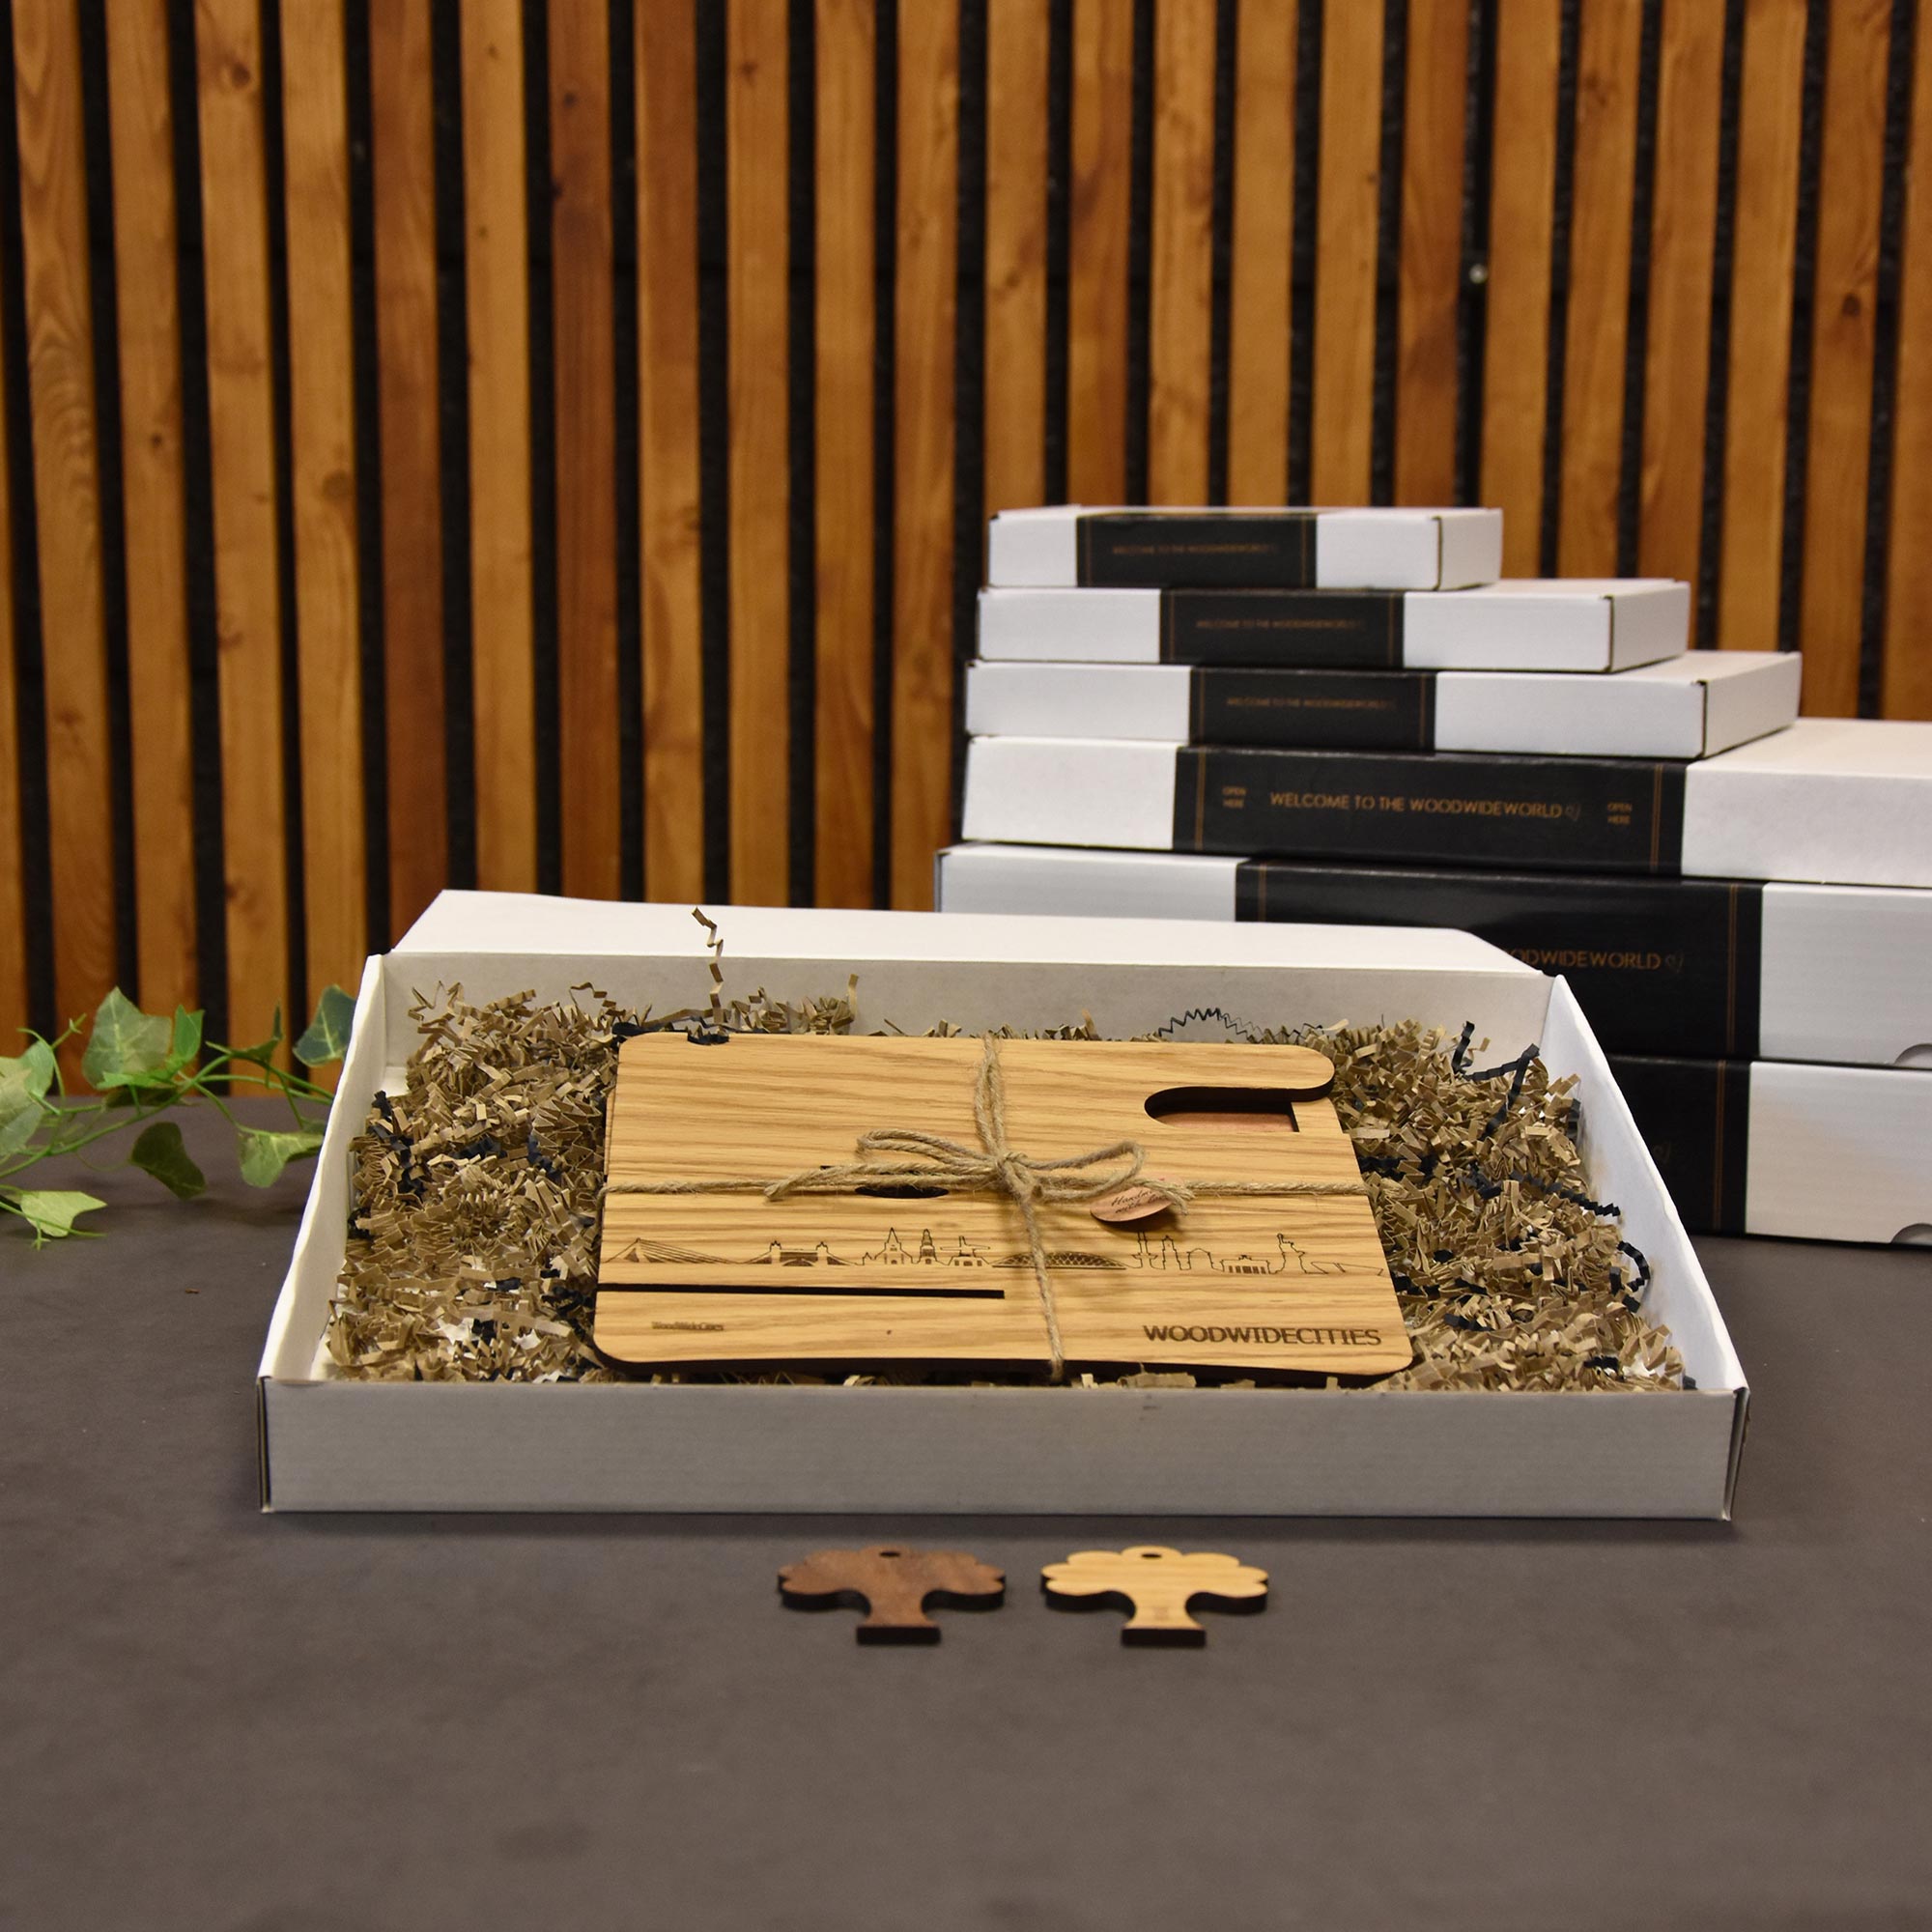 Skyline Desk Organizer Gent houten cadeau decoratie relatiegeschenk van WoodWideCities